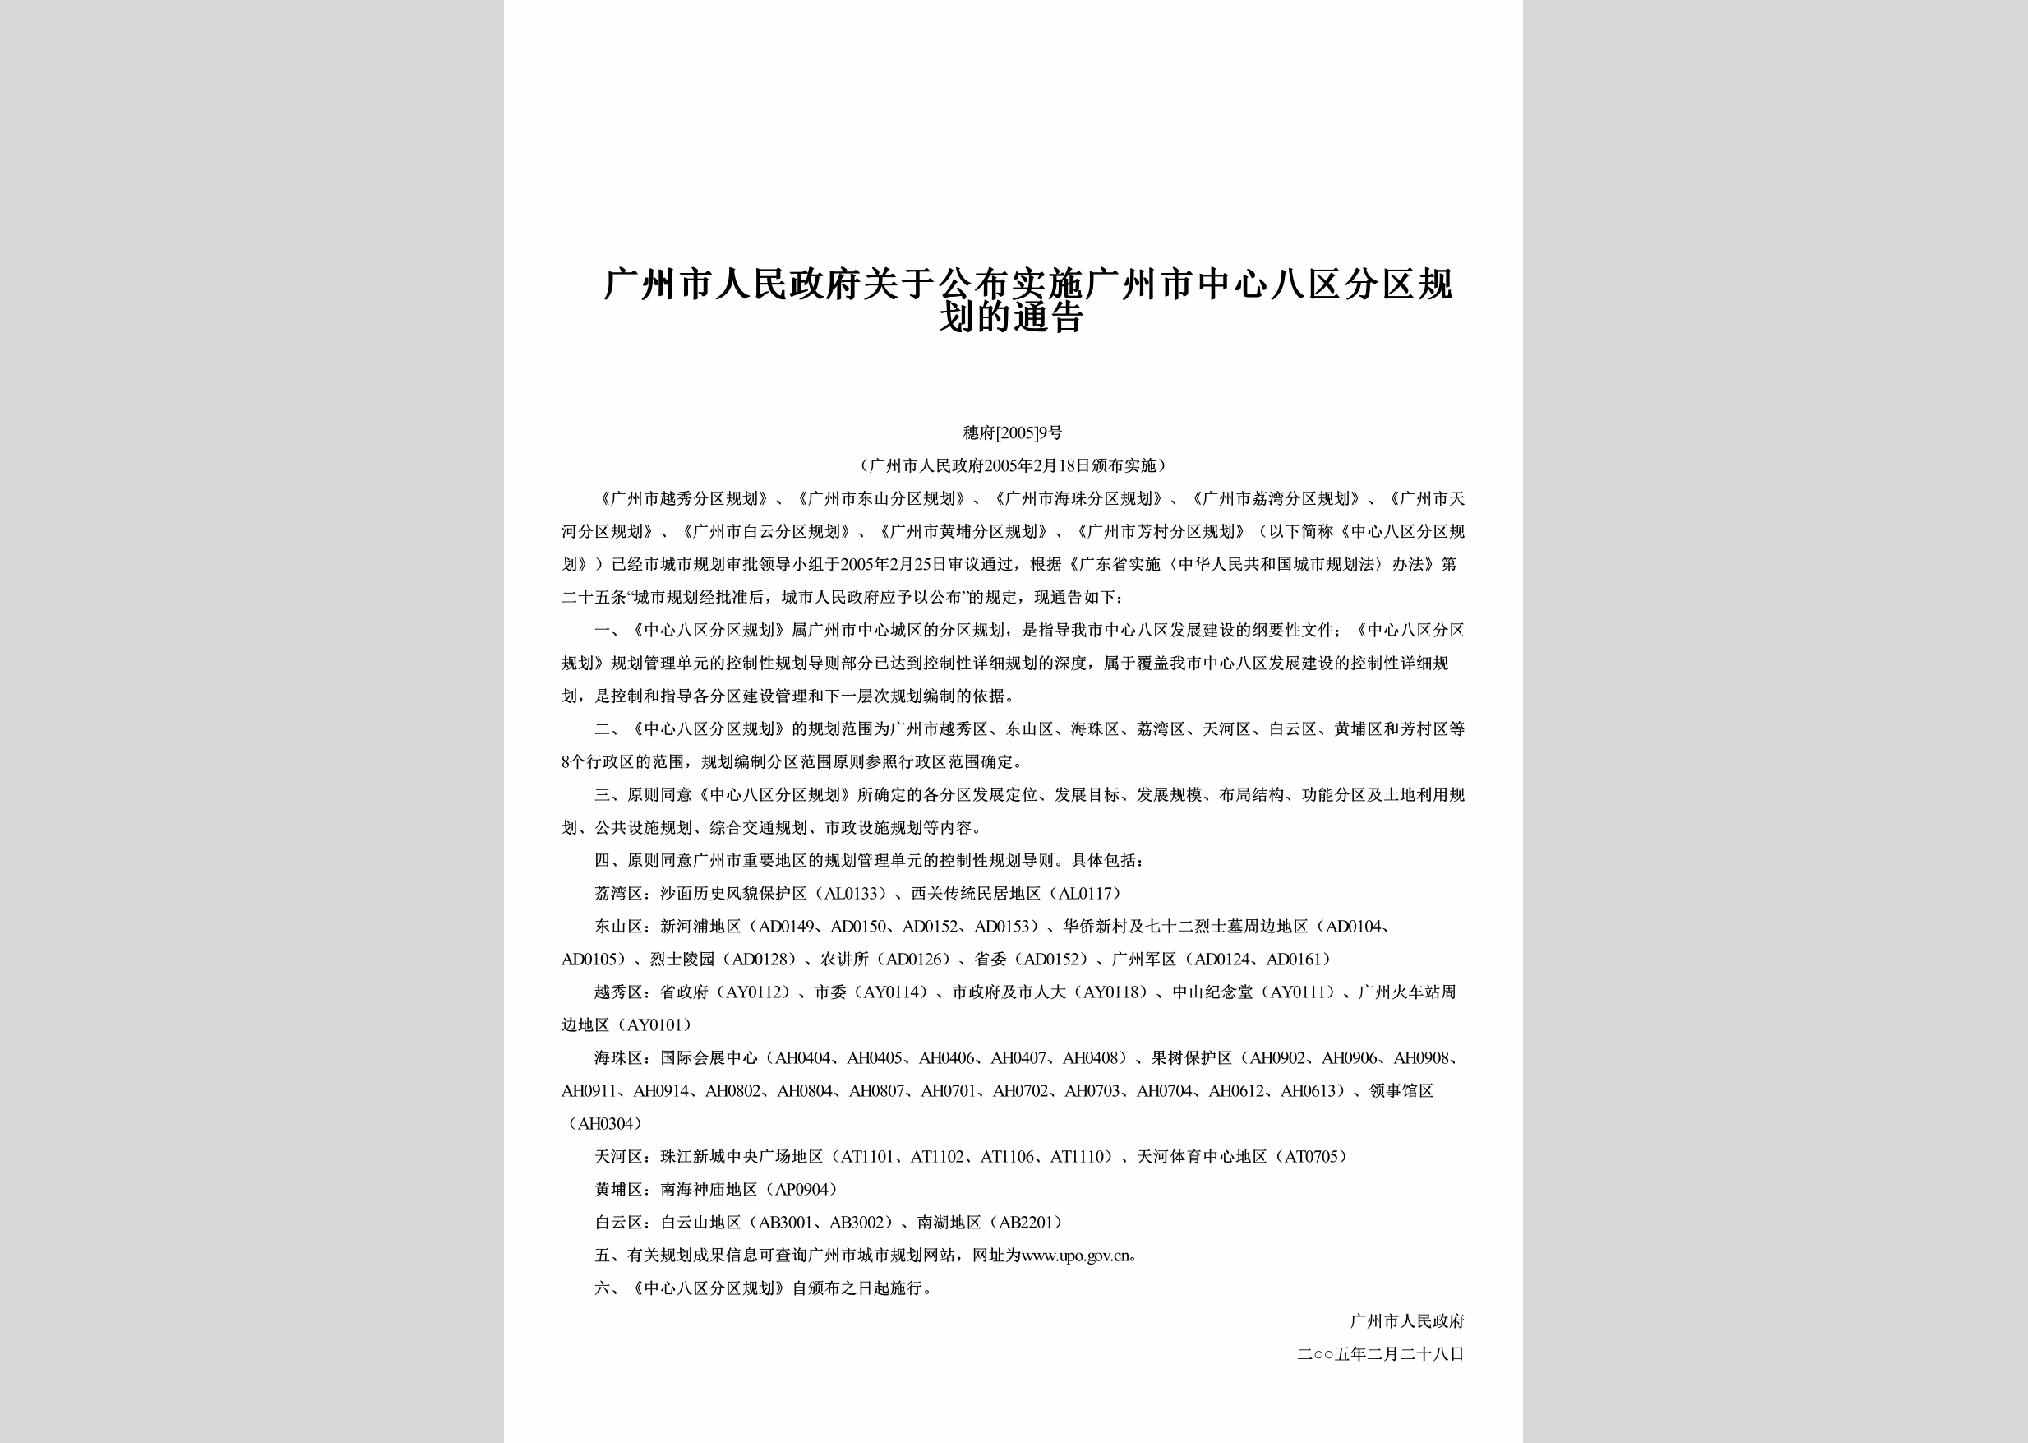 穗府[2005]9号：关于公布实施广州市中心八区分区规划的通告